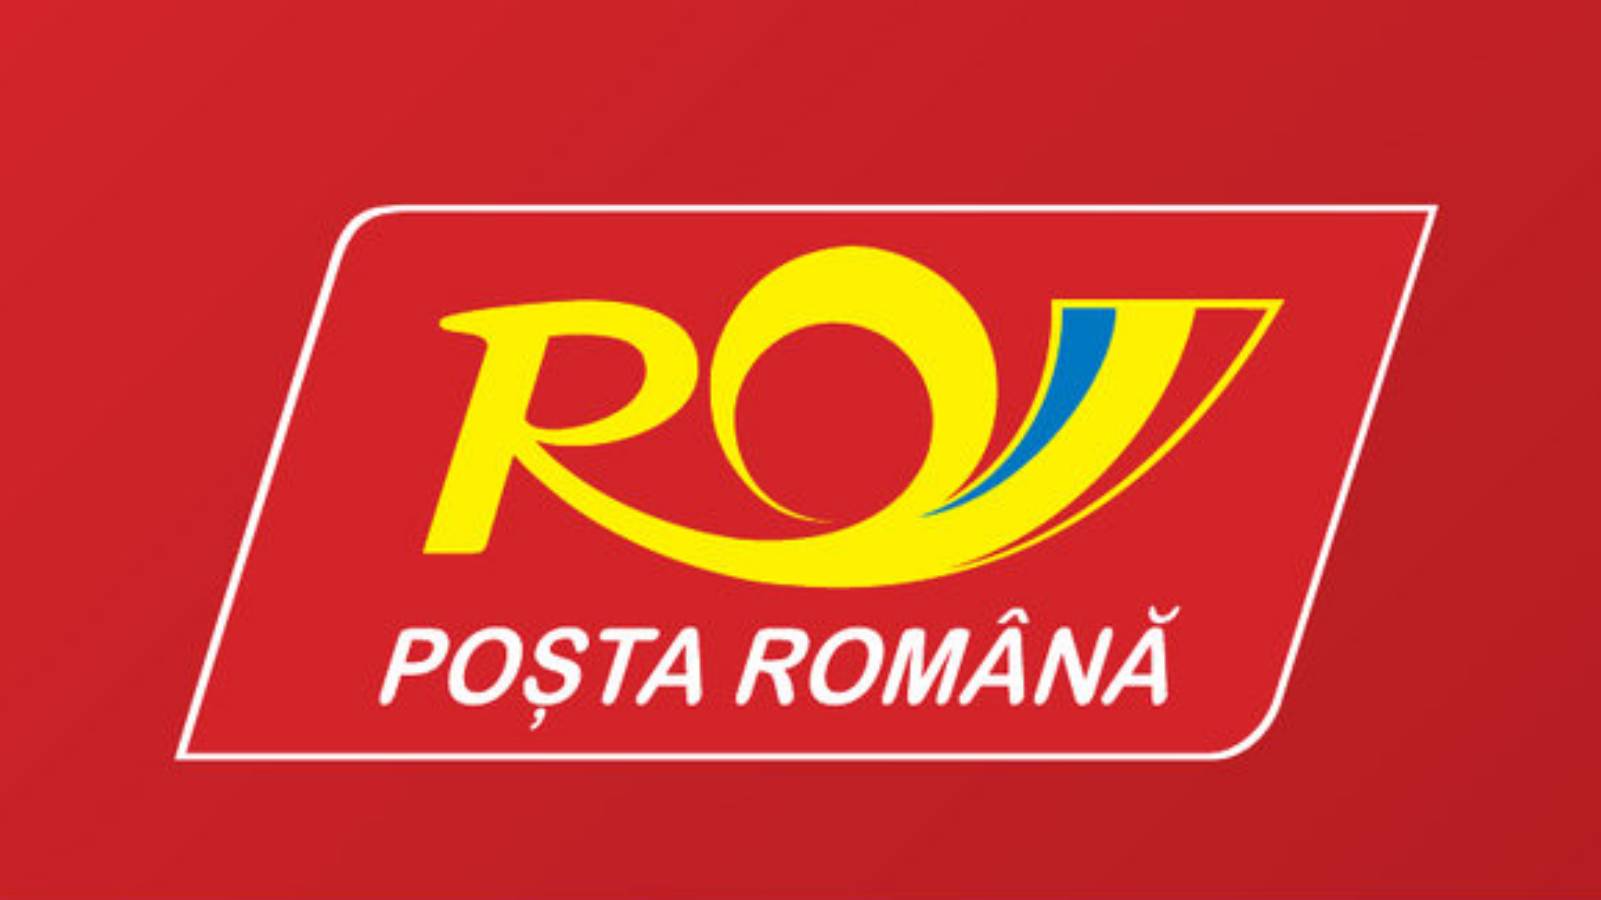 Le Poste Rumene offrono l'imballaggio nei propri uffici per qualsiasi spedizione